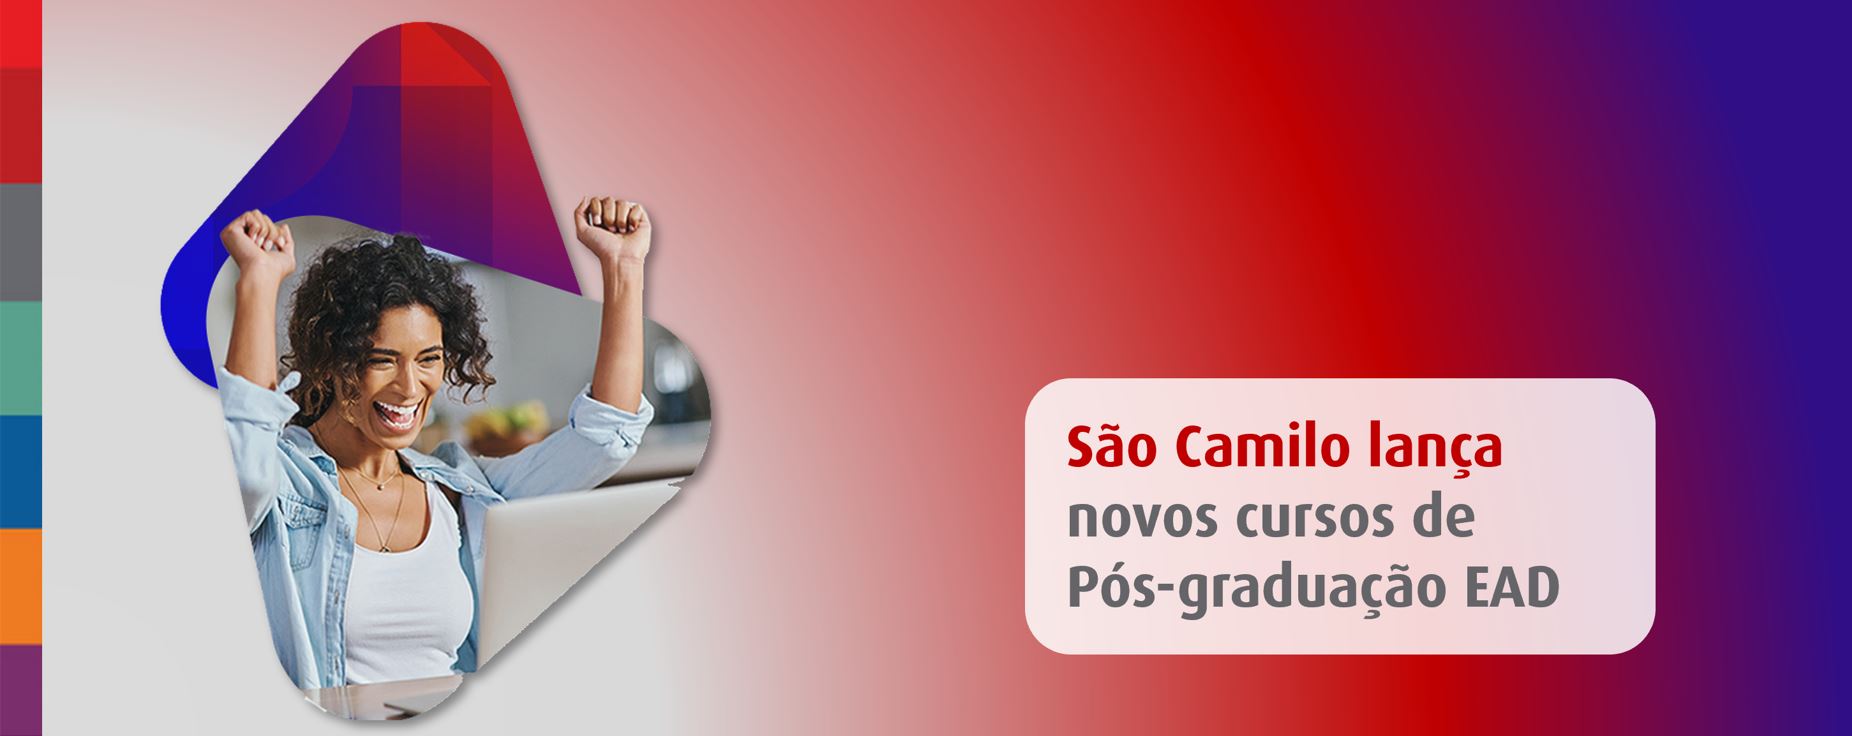 Foto da notícia São Camilo lança novos cursos de pós-graduação EAD